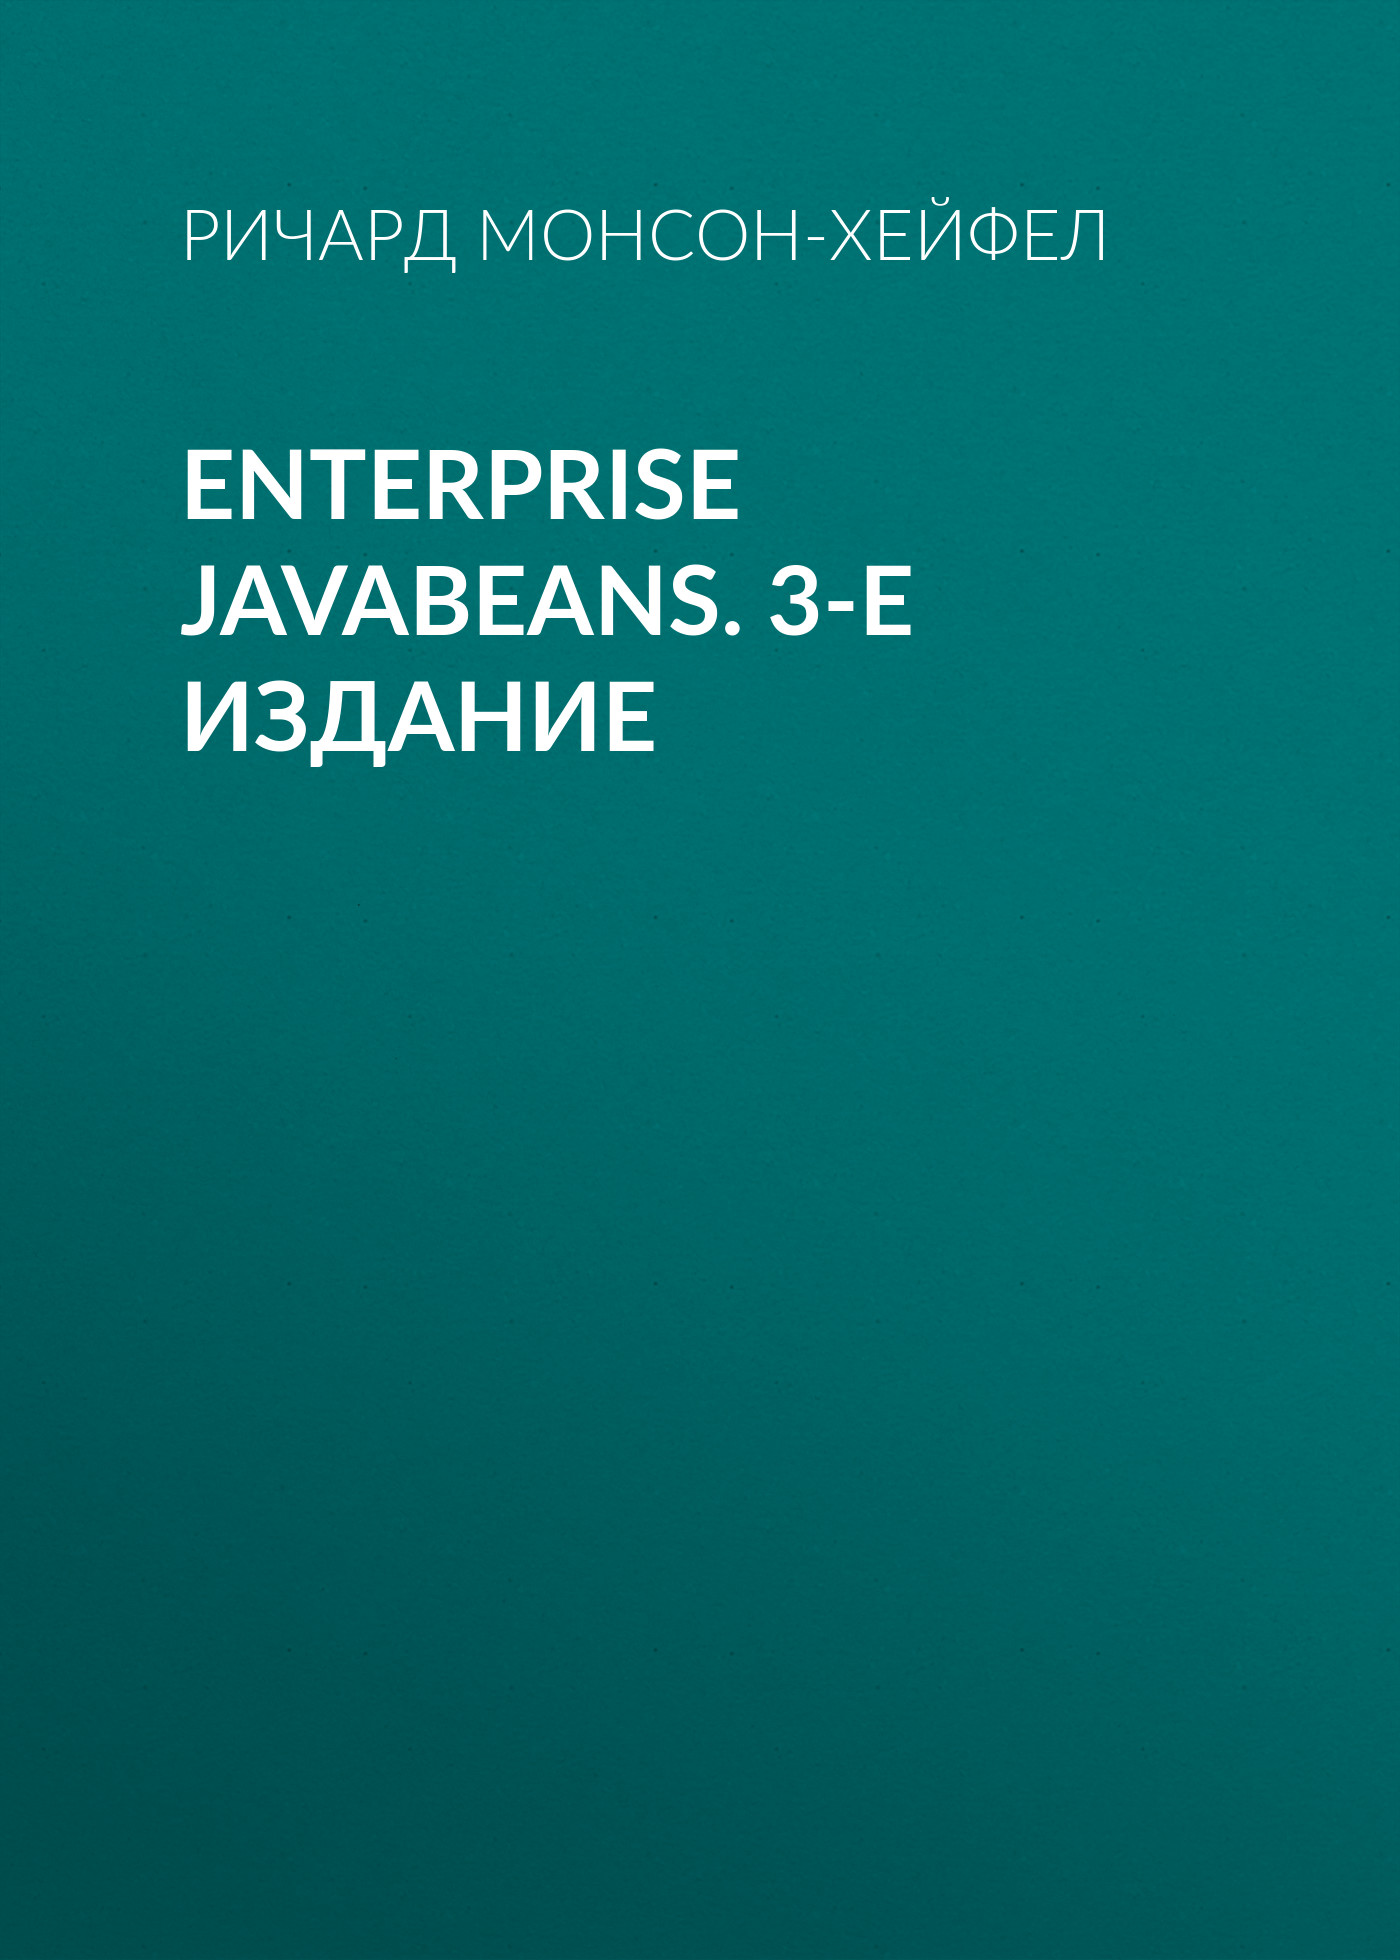 Книга  Enterprise JavaBeans. 3-е издание созданная Ричард Монсон-Хейфел, И. Васильев может относится к жанру зарубежная компьютерная литература, книги о компьютерах, компьютерная справочная литература, программирование. Стоимость электронной книги Enterprise JavaBeans. 3-е издание с идентификатором 24500382 составляет 190.00 руб.